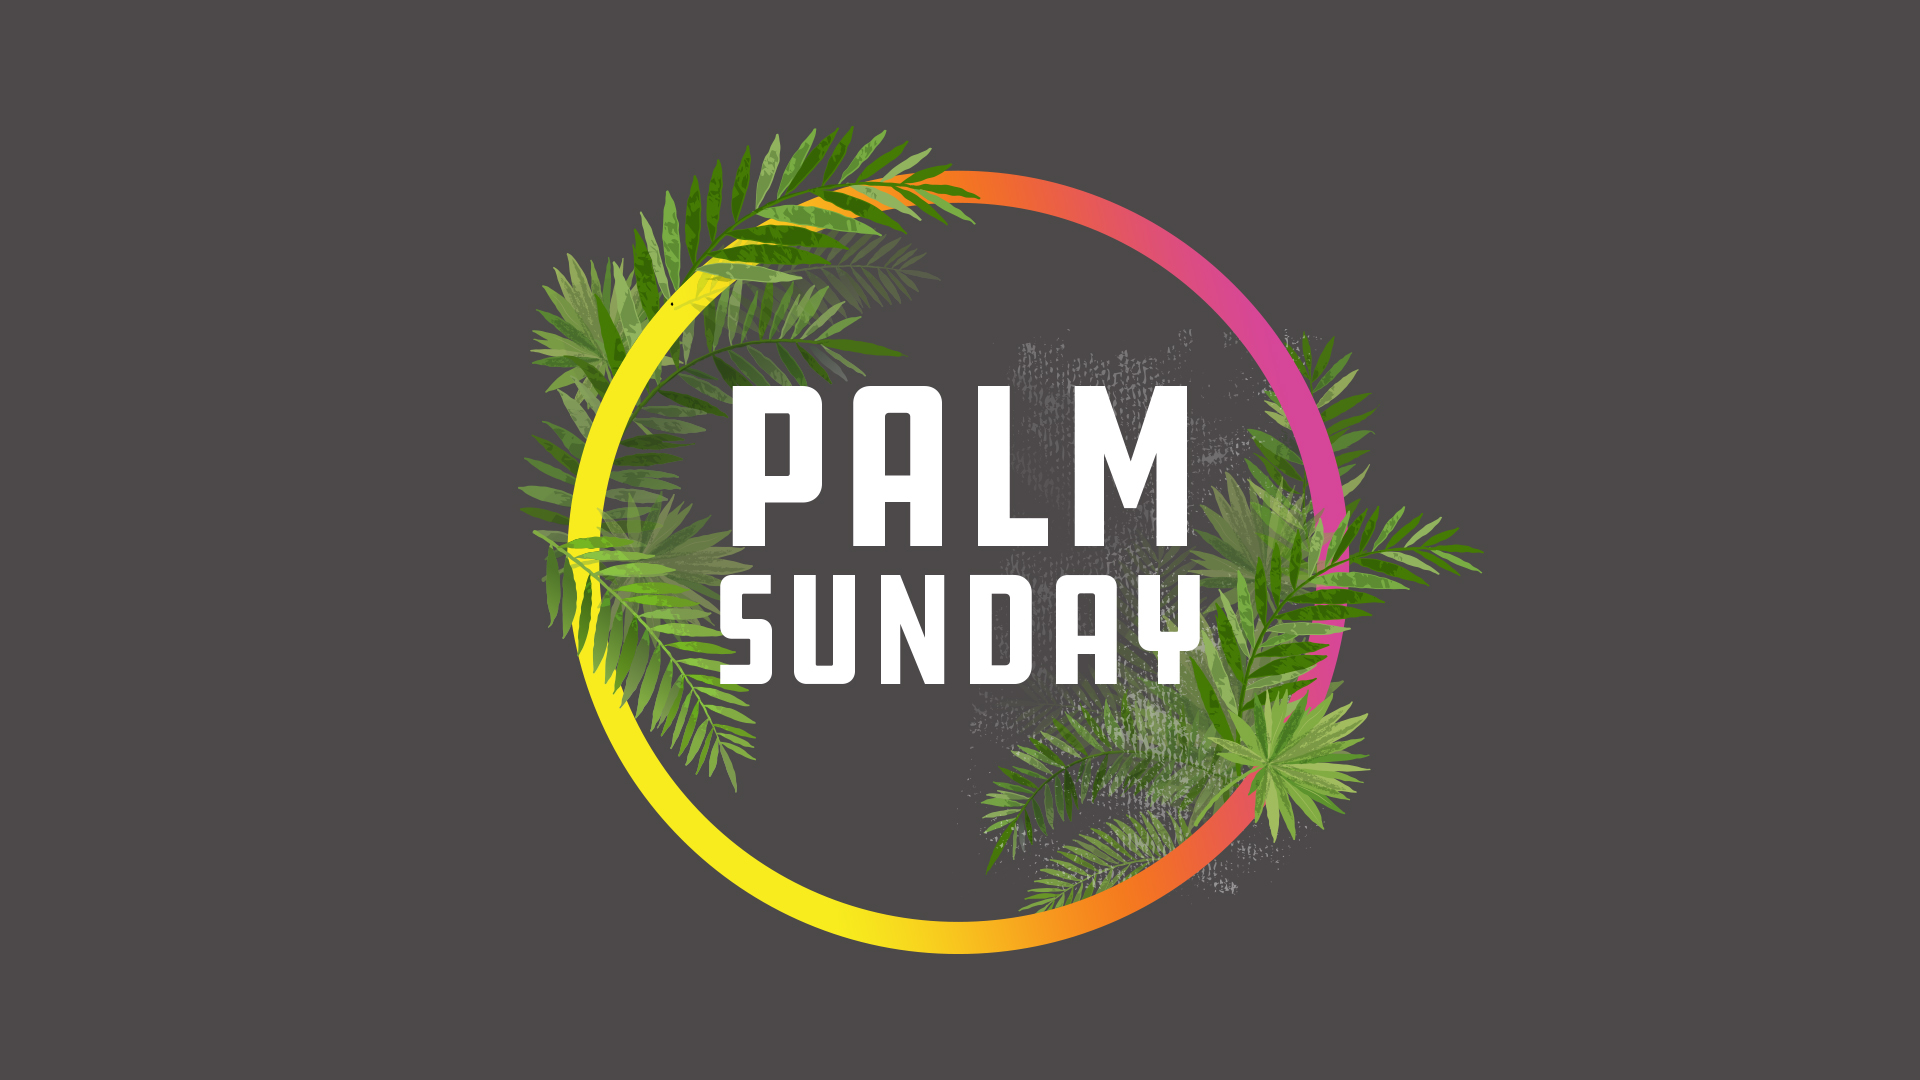 Palm Sunday 2019